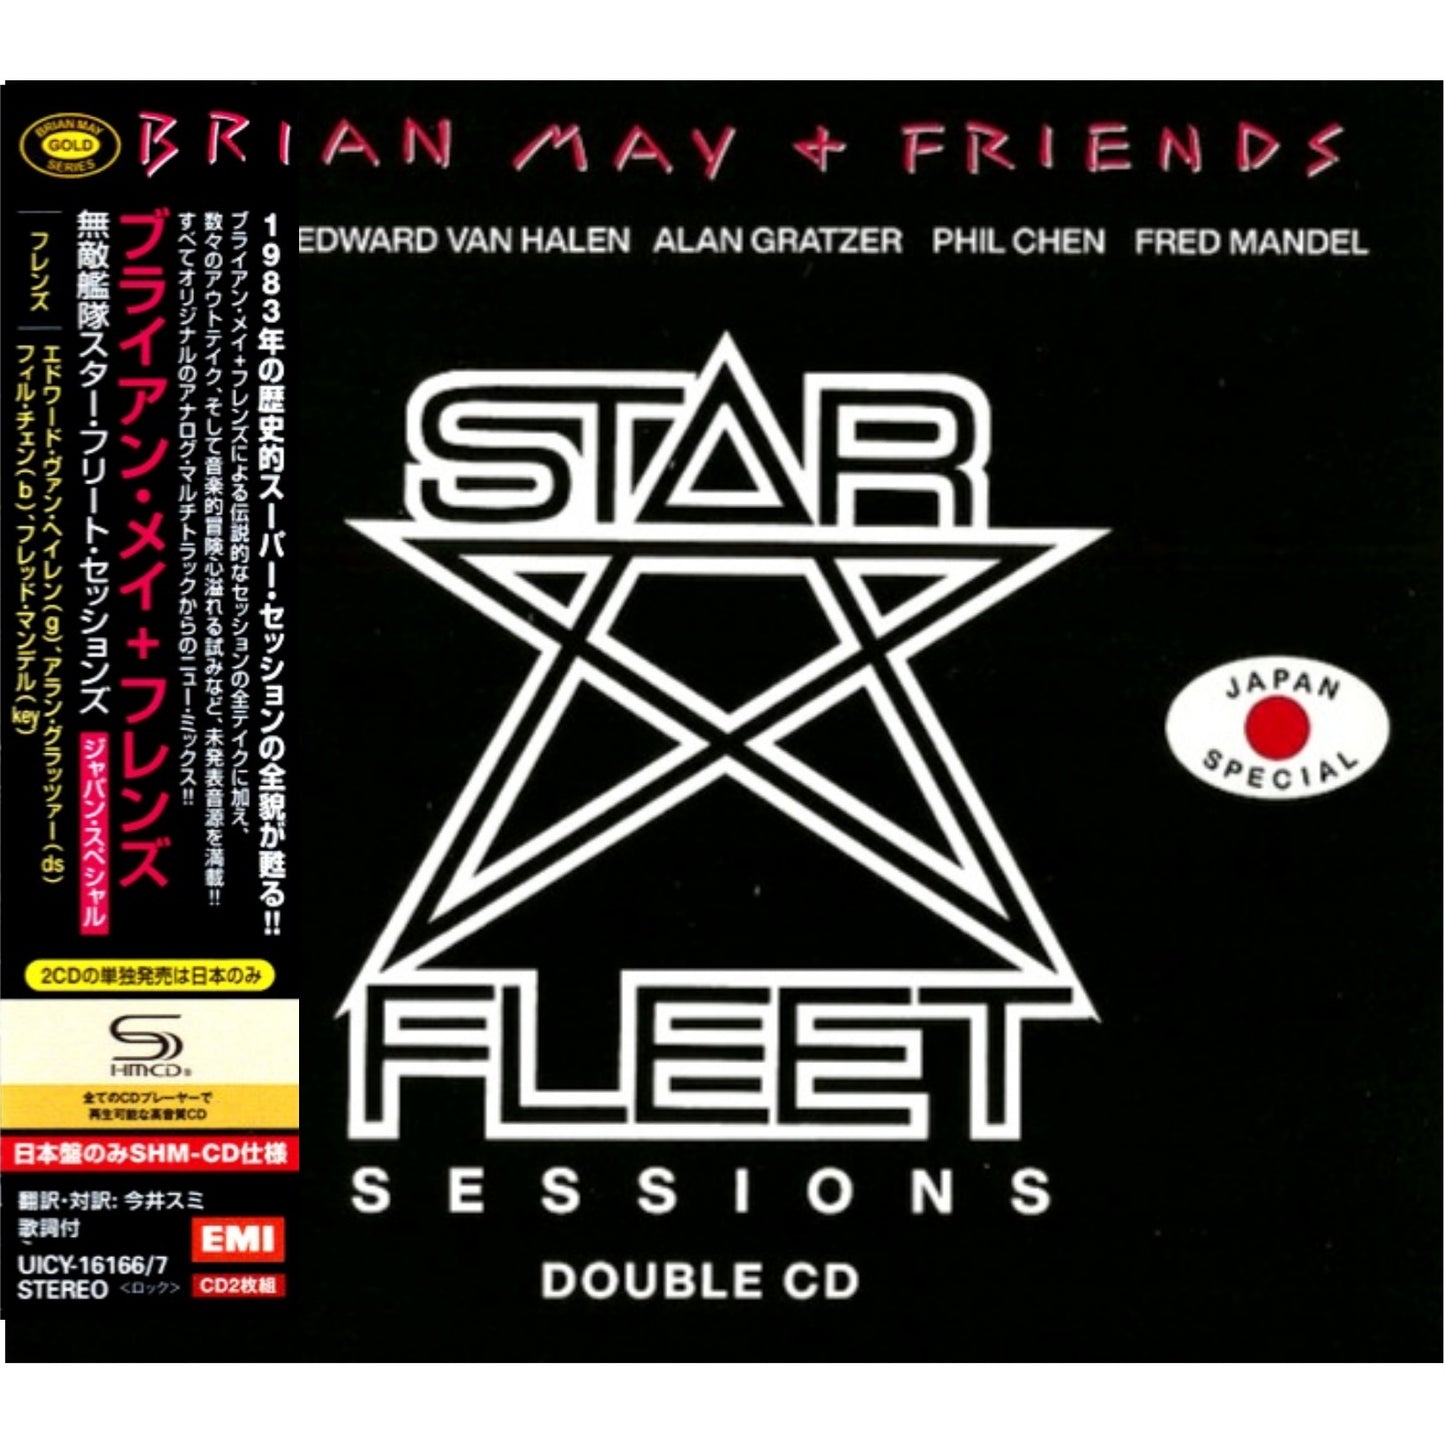 Brian_May_&_Friends_StarFleet_Sessions_SHM-CD_2xCD